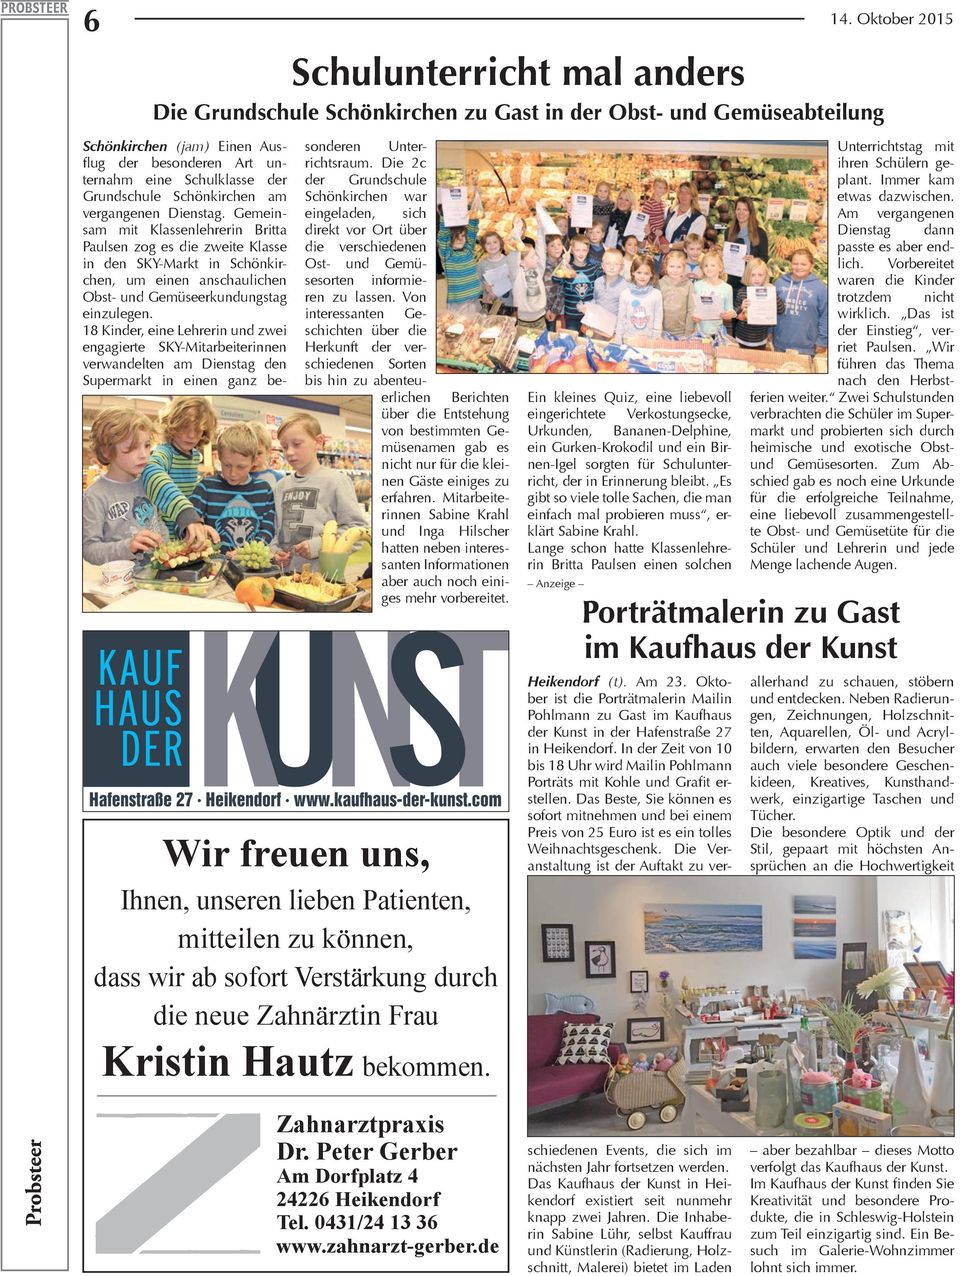 Gemeinsam mit Klassenlehrerin Britta Paulsen zog es die zweite Klasse in den SKY-Markt in Schönkirchen, um einen anschaulichen Obst- und Gemüseerkundungstag einzulegen.